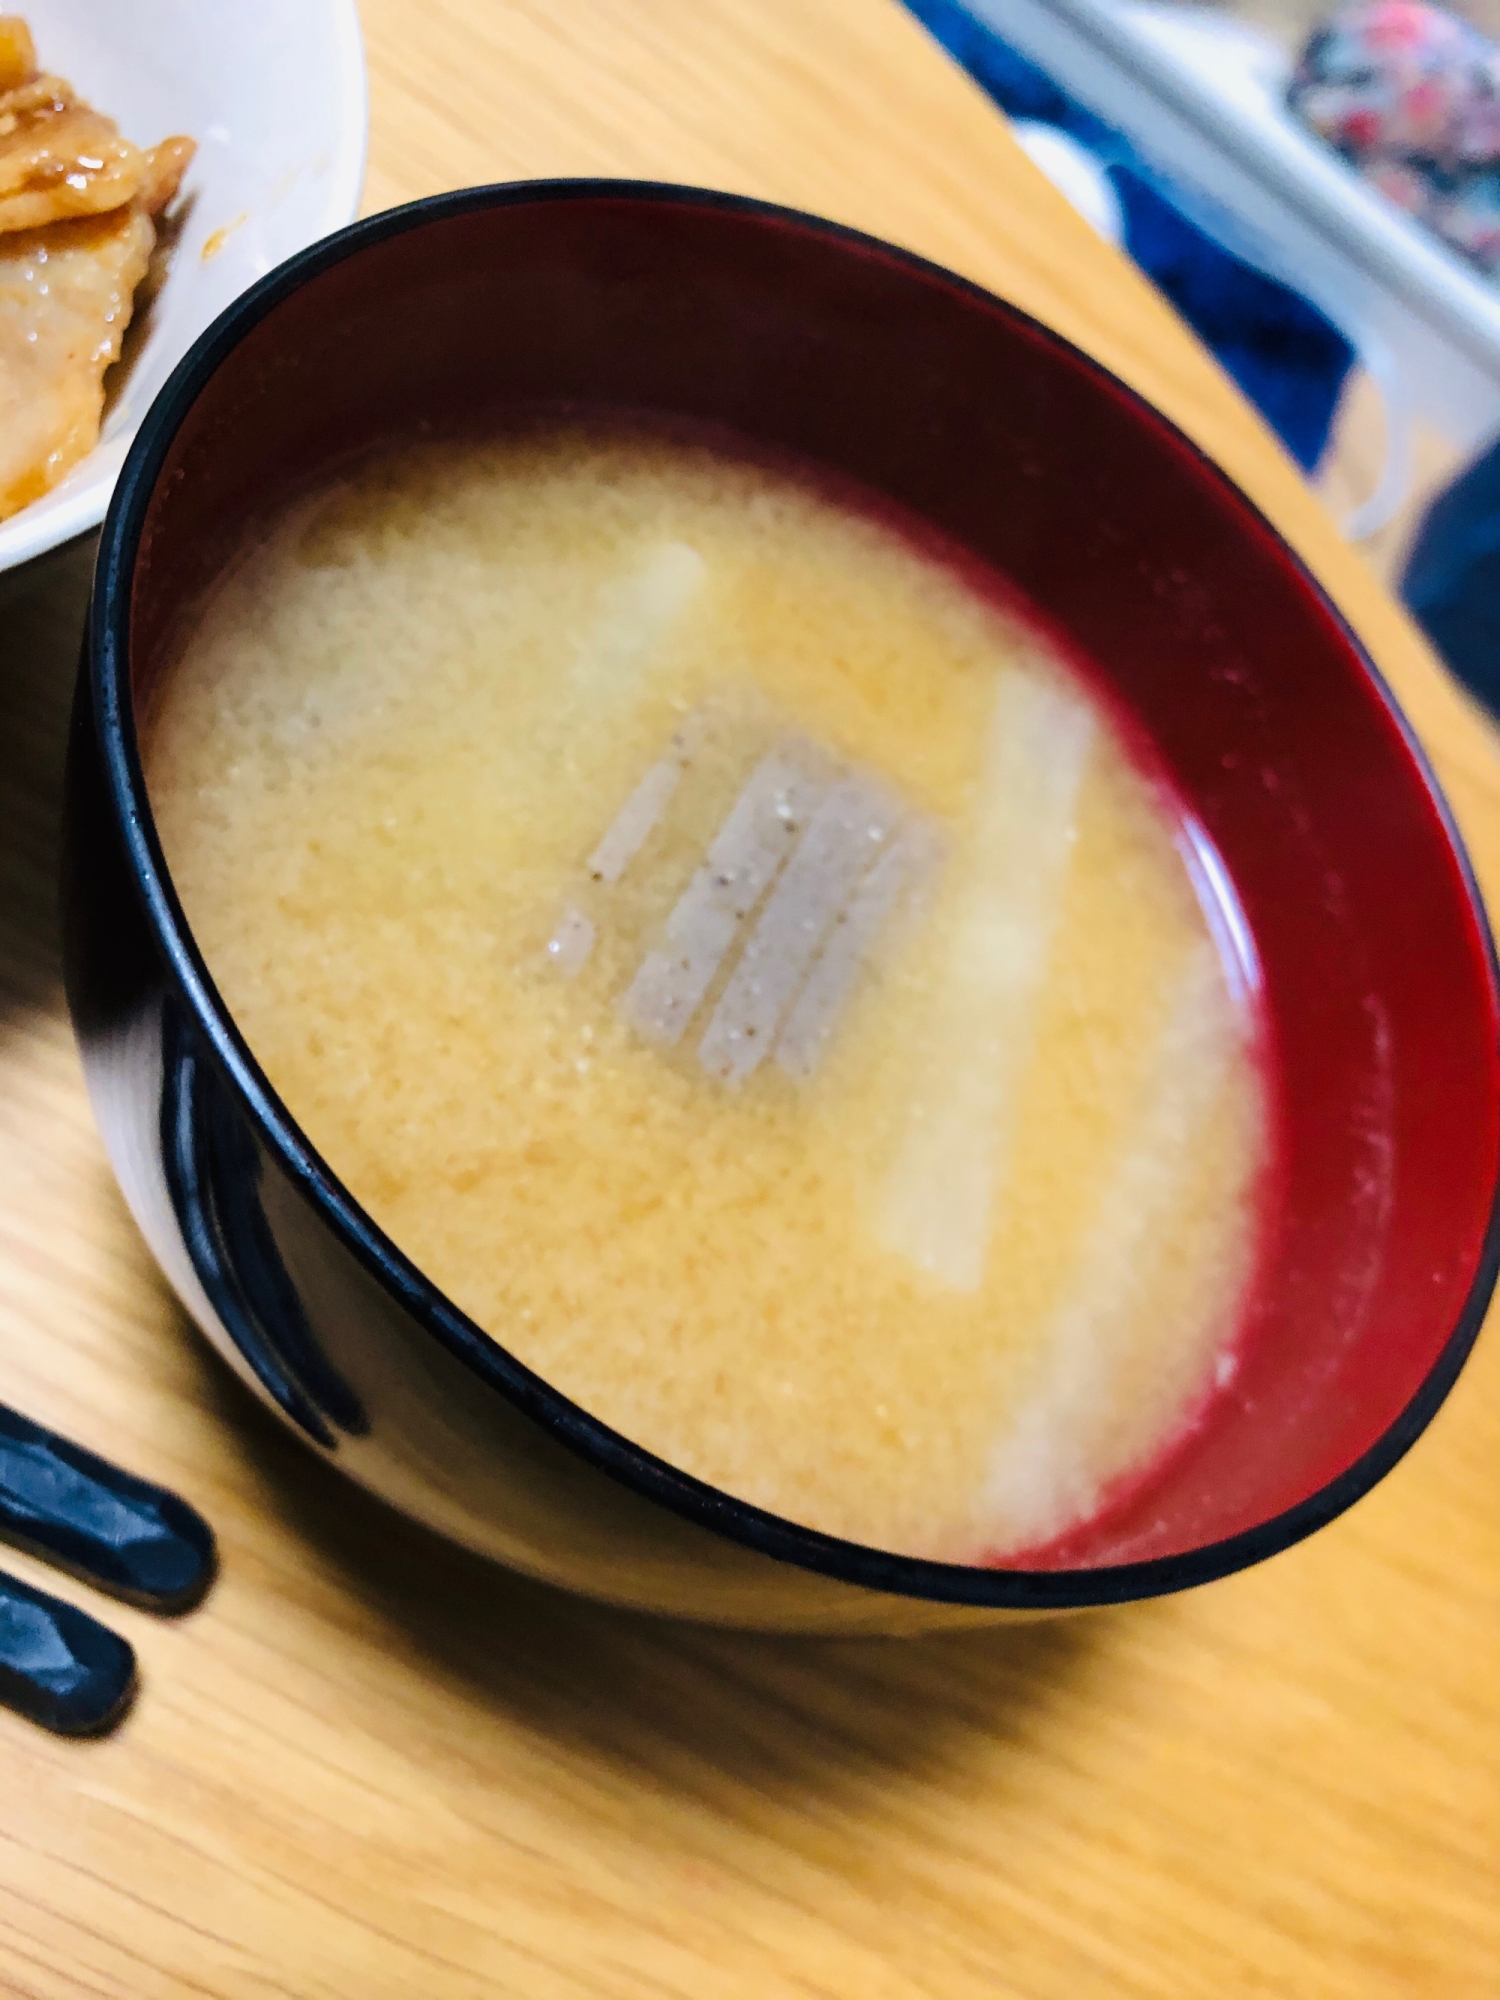 大根&こんにゃく味噌汁